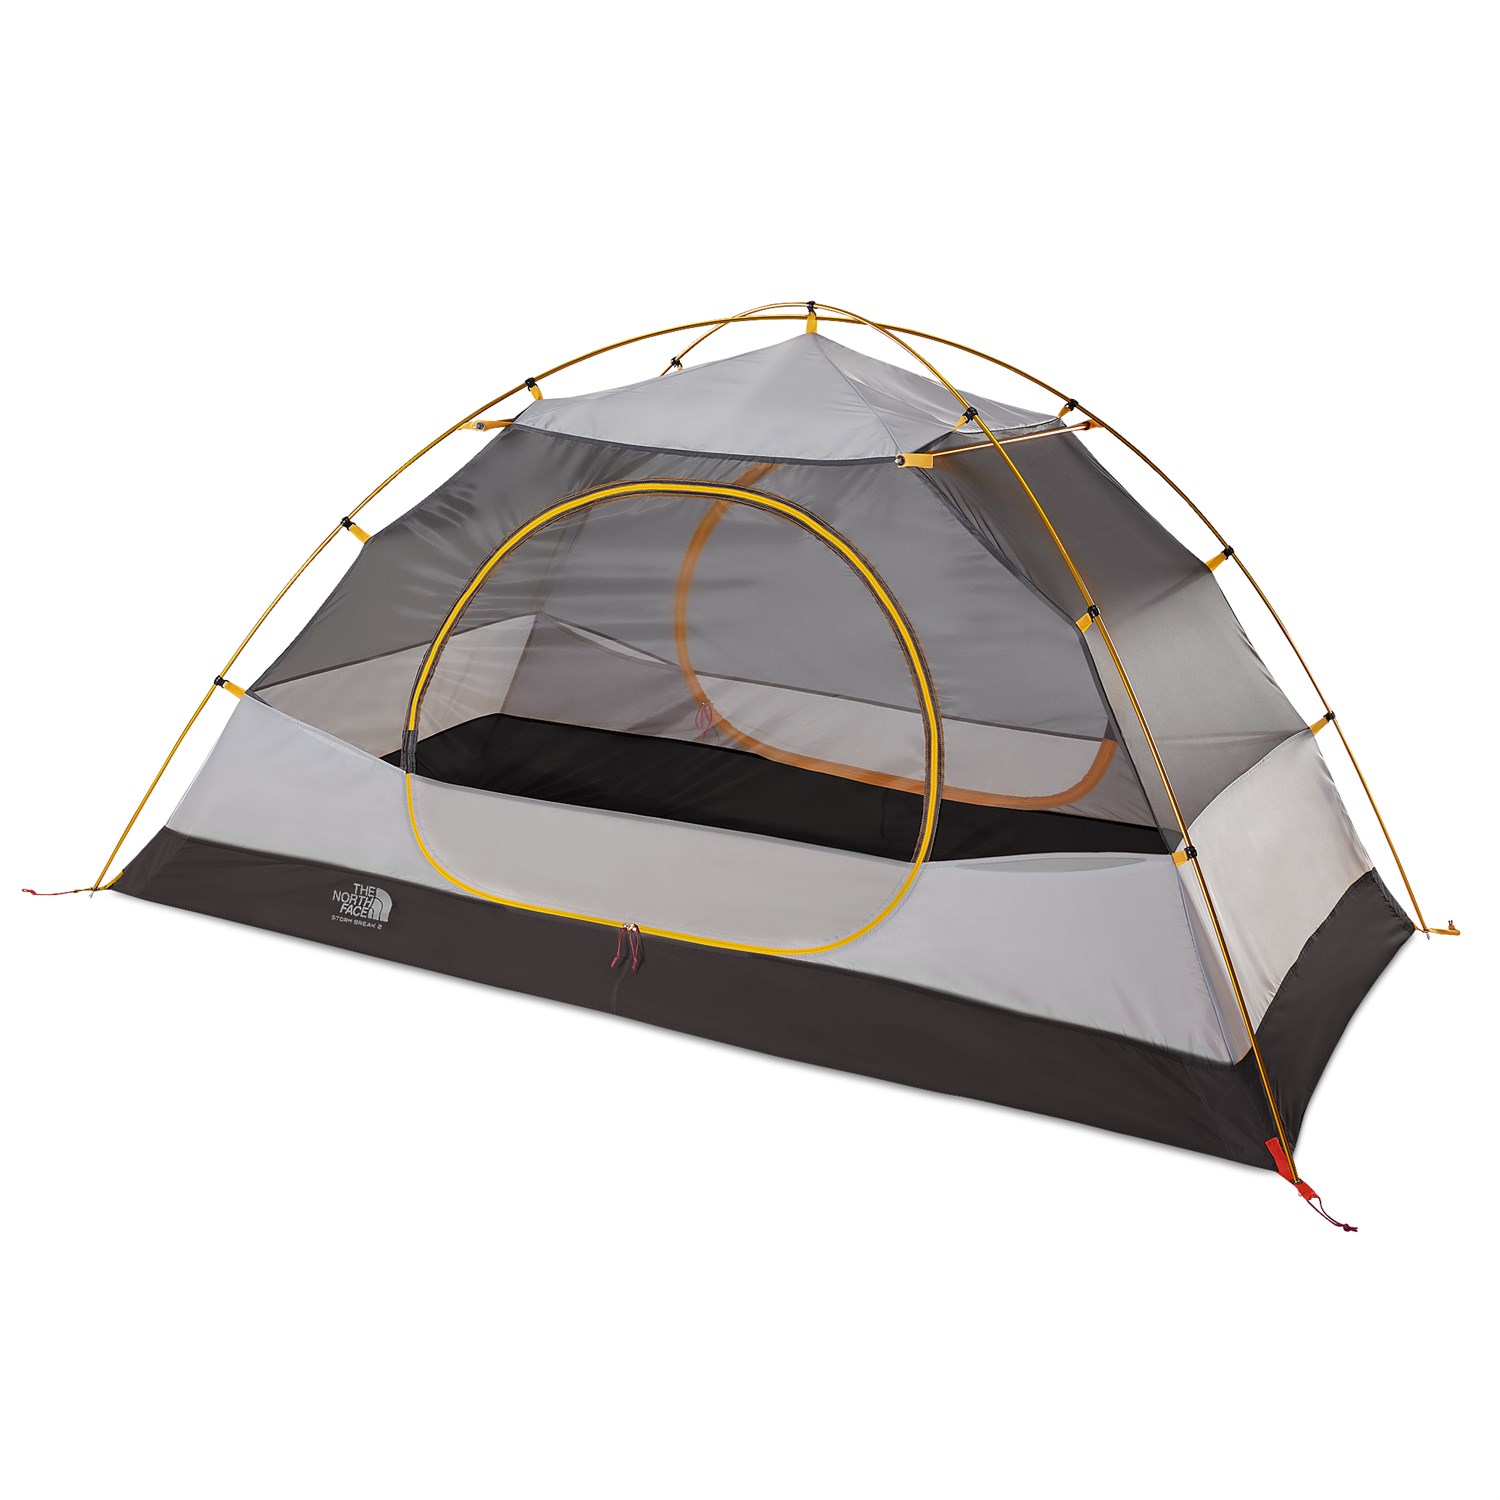 stormbreak 2 tent review